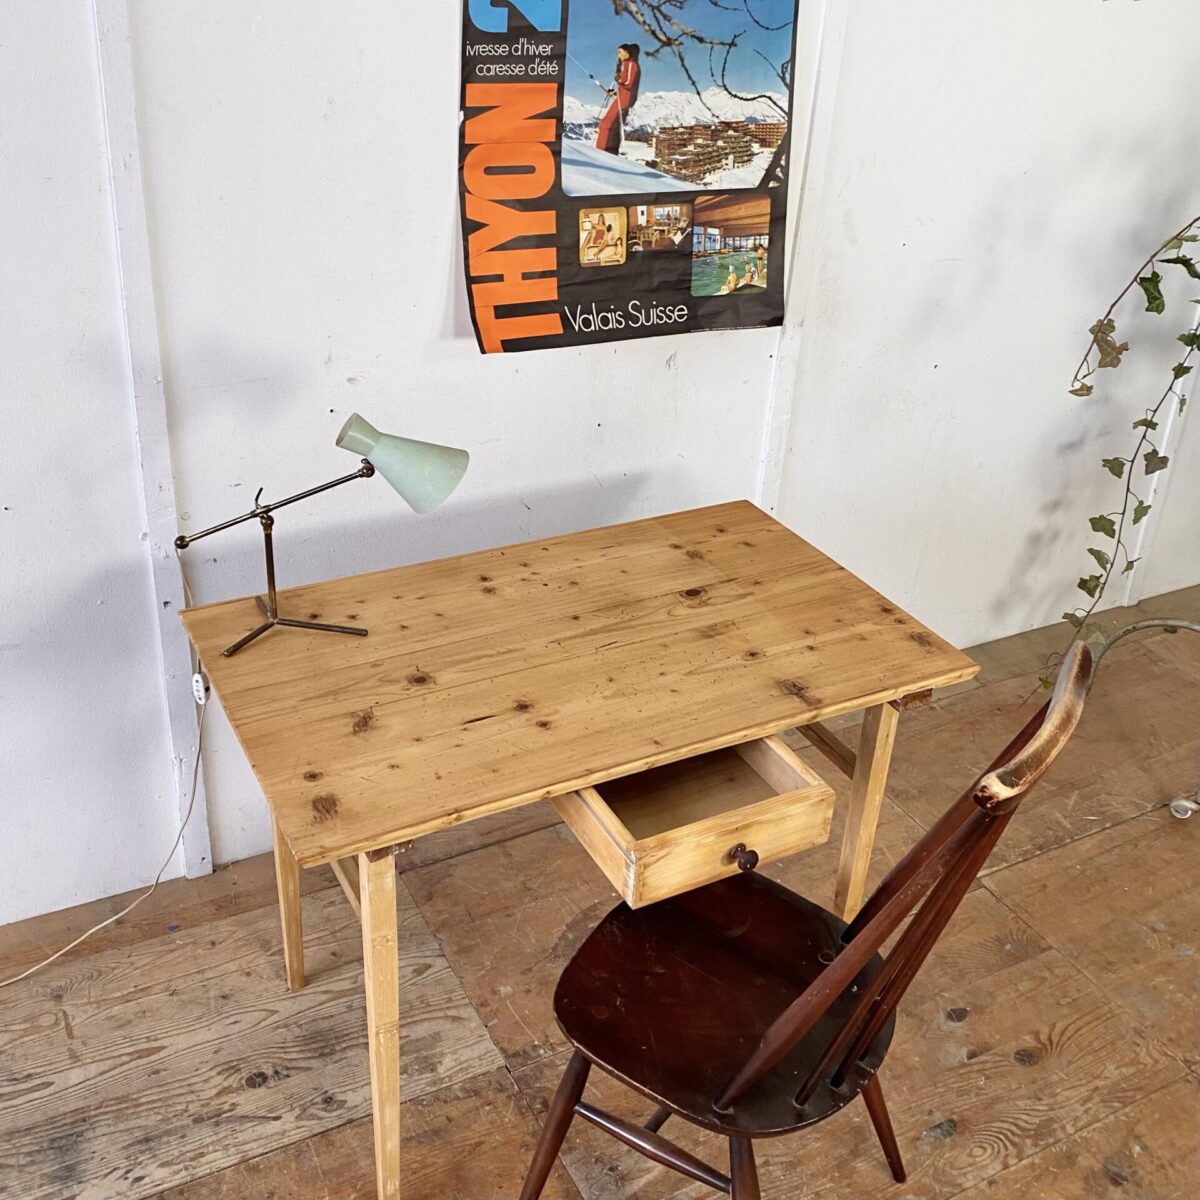 Deuxieme.shop alter Holztisch, Biedermeiertisch. Feingliedriger Schreibtisch mit Schublade. 100x60cm Höhe 72.5cm. Das Tischblatt ist aus Fichtenholz, die konischen Tischbeine aus Ahorn. Der Tisch hat diverse Gebrauchsspuren, Patina und etwas Farb Rückstände. Technisch ist der Tisch in stabilem restaurierten Zustand. Die Konstruktion, mit den in die Gratleisten gesteckten Tischbeinen, hat jedoch nicht die gleiche Stabilität wie ein Zargentisch. Die Schublade mit Holzgriff läuft gut. 